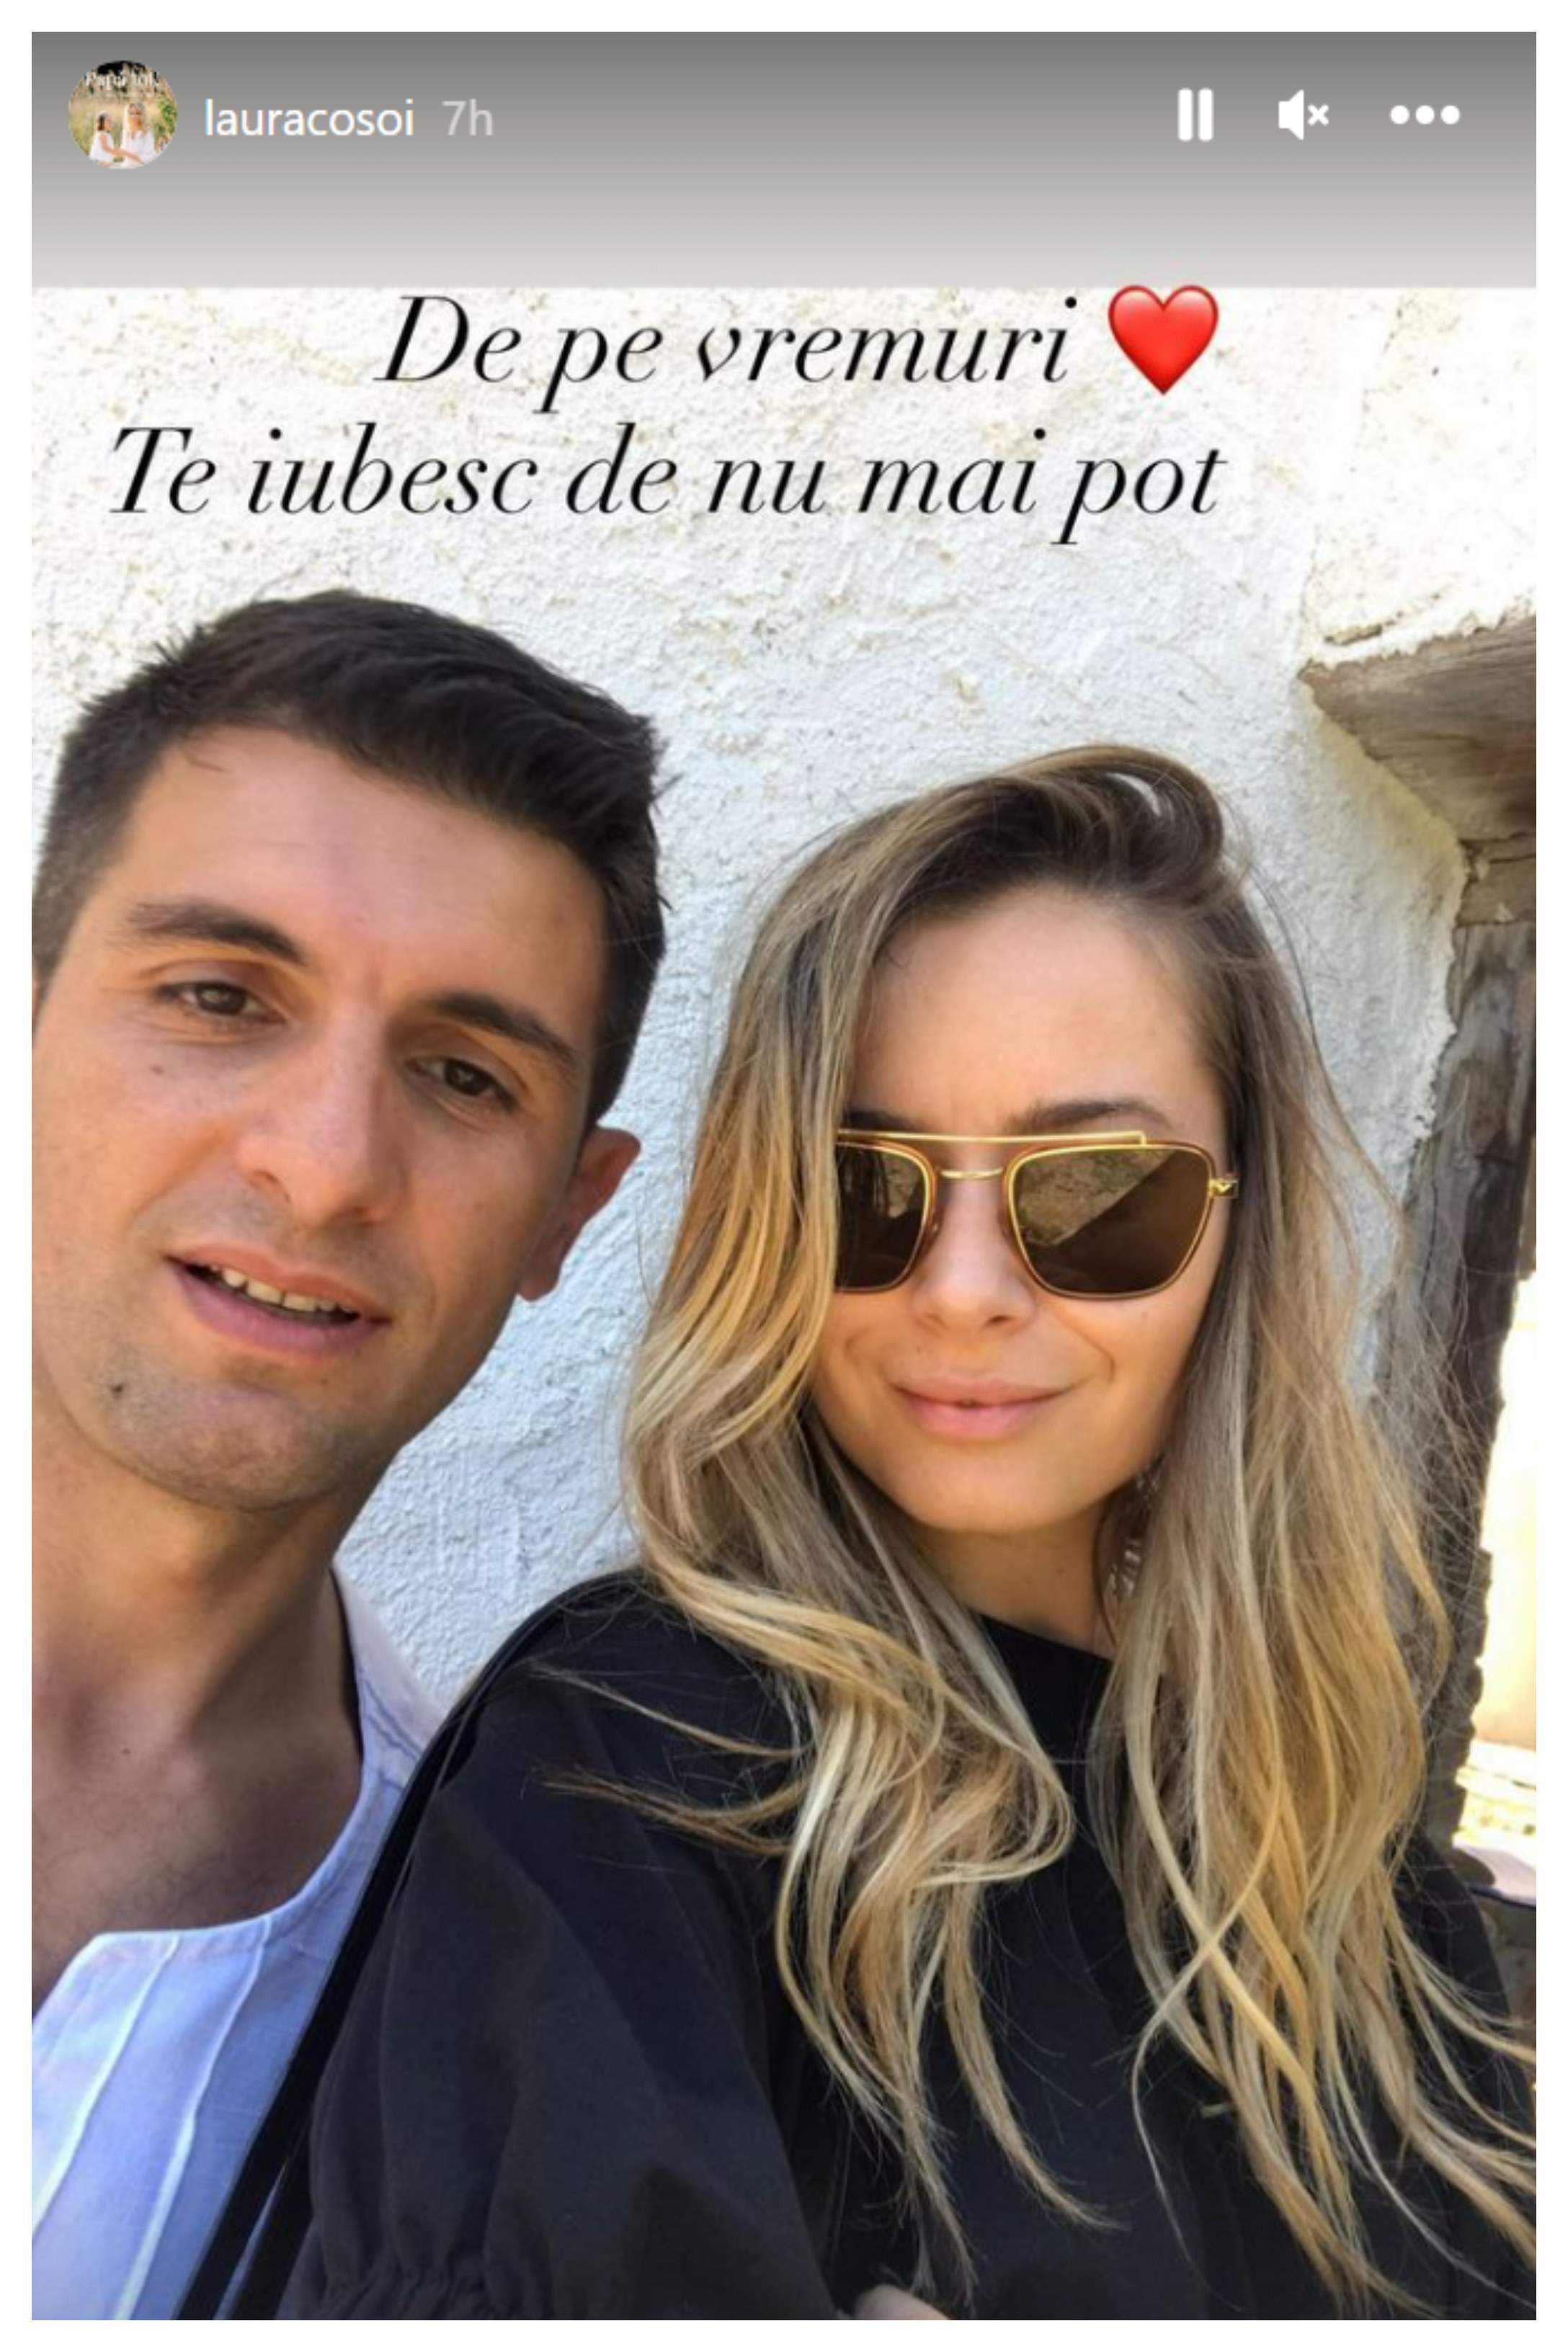 Laura Cosoi îl sărbătorește pe soțul ei, Cosmin Curticăpean. Ce mesaj emoționant a postat actrița: "Te iubesc de nu mai pot" / FOTO